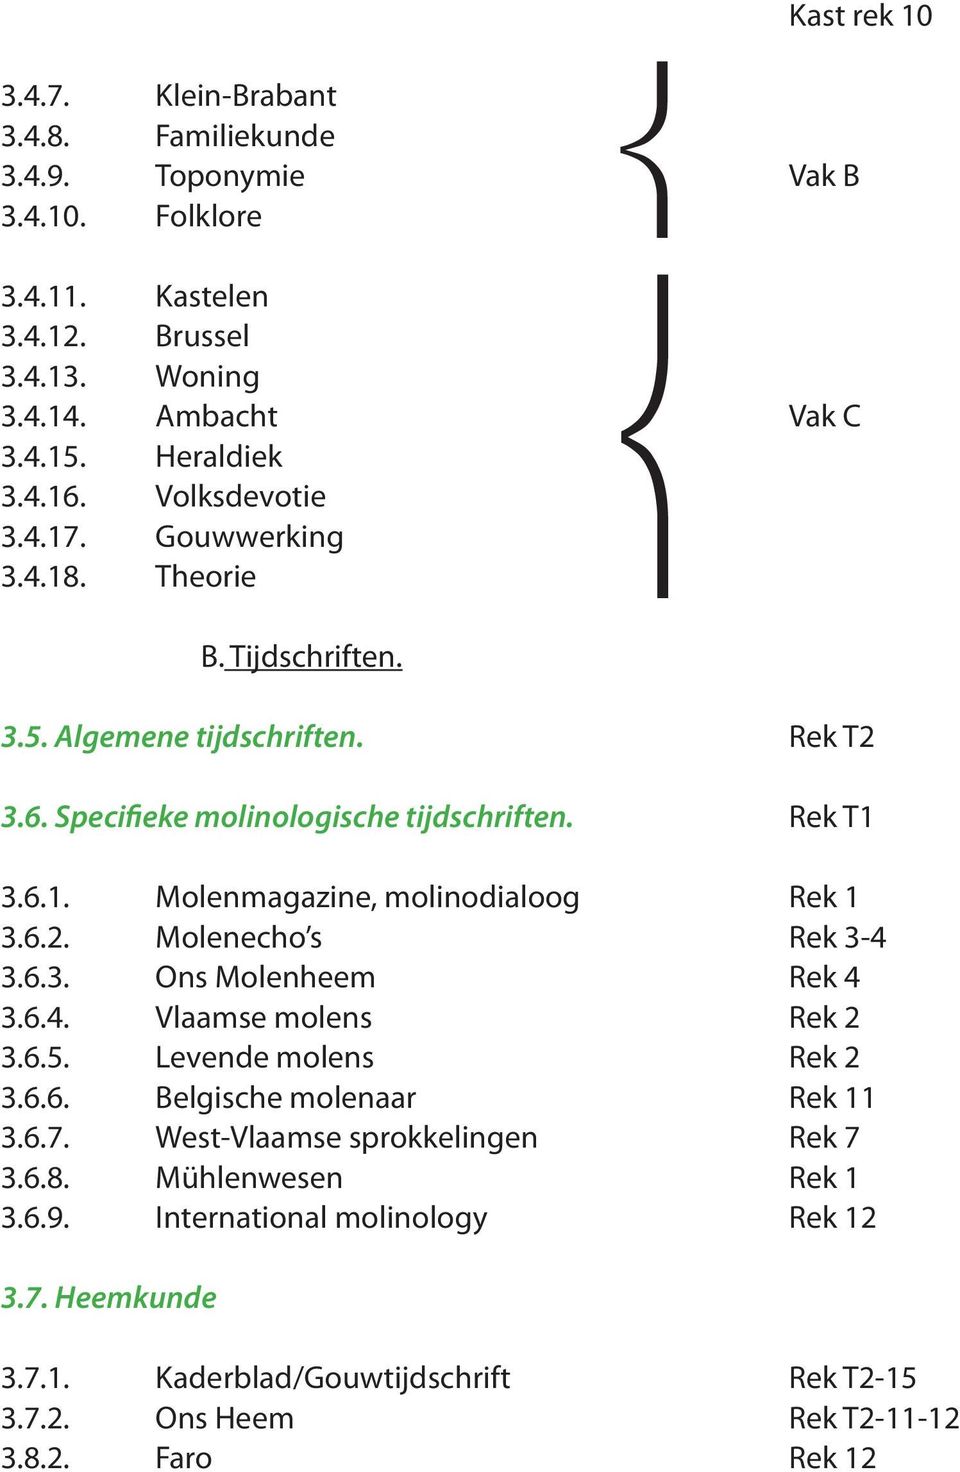 6.2. Molenecho s Rek 3-4 3.6.3. Ons Molenheem Rek 4 3.6.4. Vlaamse molens Rek 2 3.6.5. Levende molens Rek 2 3.6.6. Belgische molenaar Rek 11 3.6.7. West-Vlaamse sprokkelingen Rek 7 3.6.8.